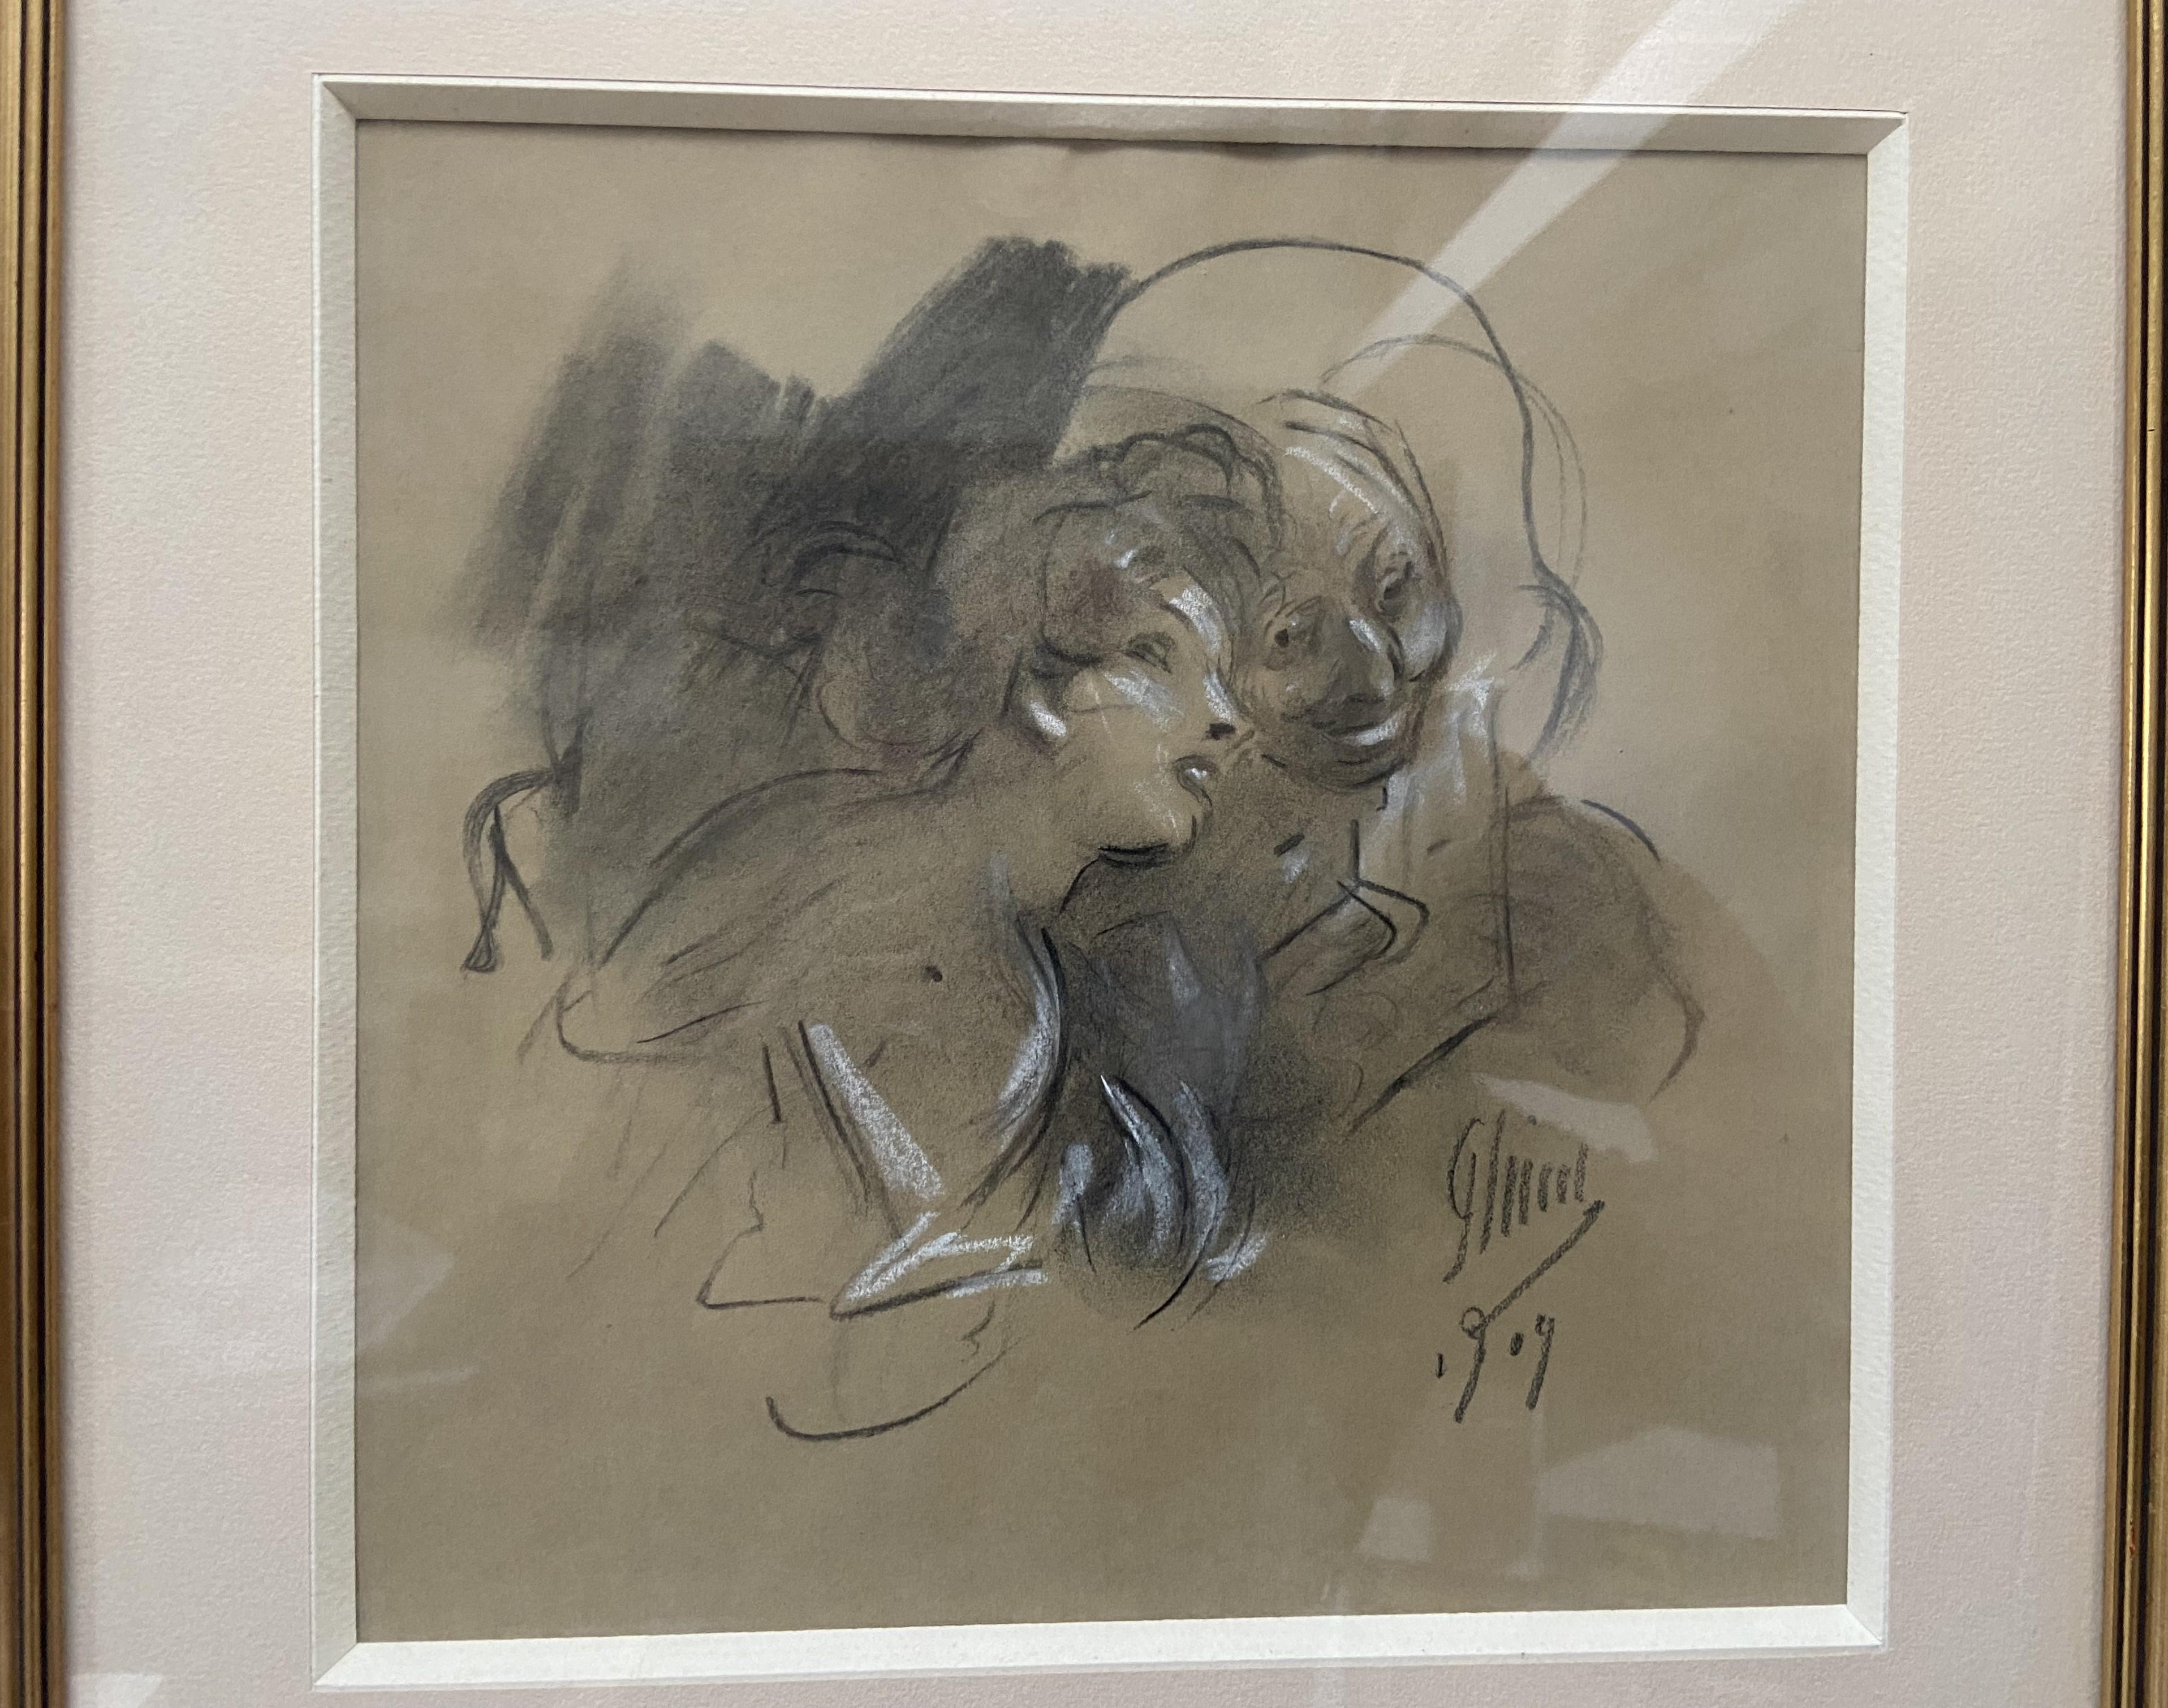 Jules Cheret (1836-1932) 
La Confidence (Das Vertrauen) 1909
signiert und datiert unten rechts
Holzkohle  und Erhöhungen aus weißer Kreide
22.7 x 22.7 cm
Gerahmt unter Glas : 33,8 x 33,8 cm

Ein weiteres Werk, das sehr repräsentativ für die Kunst